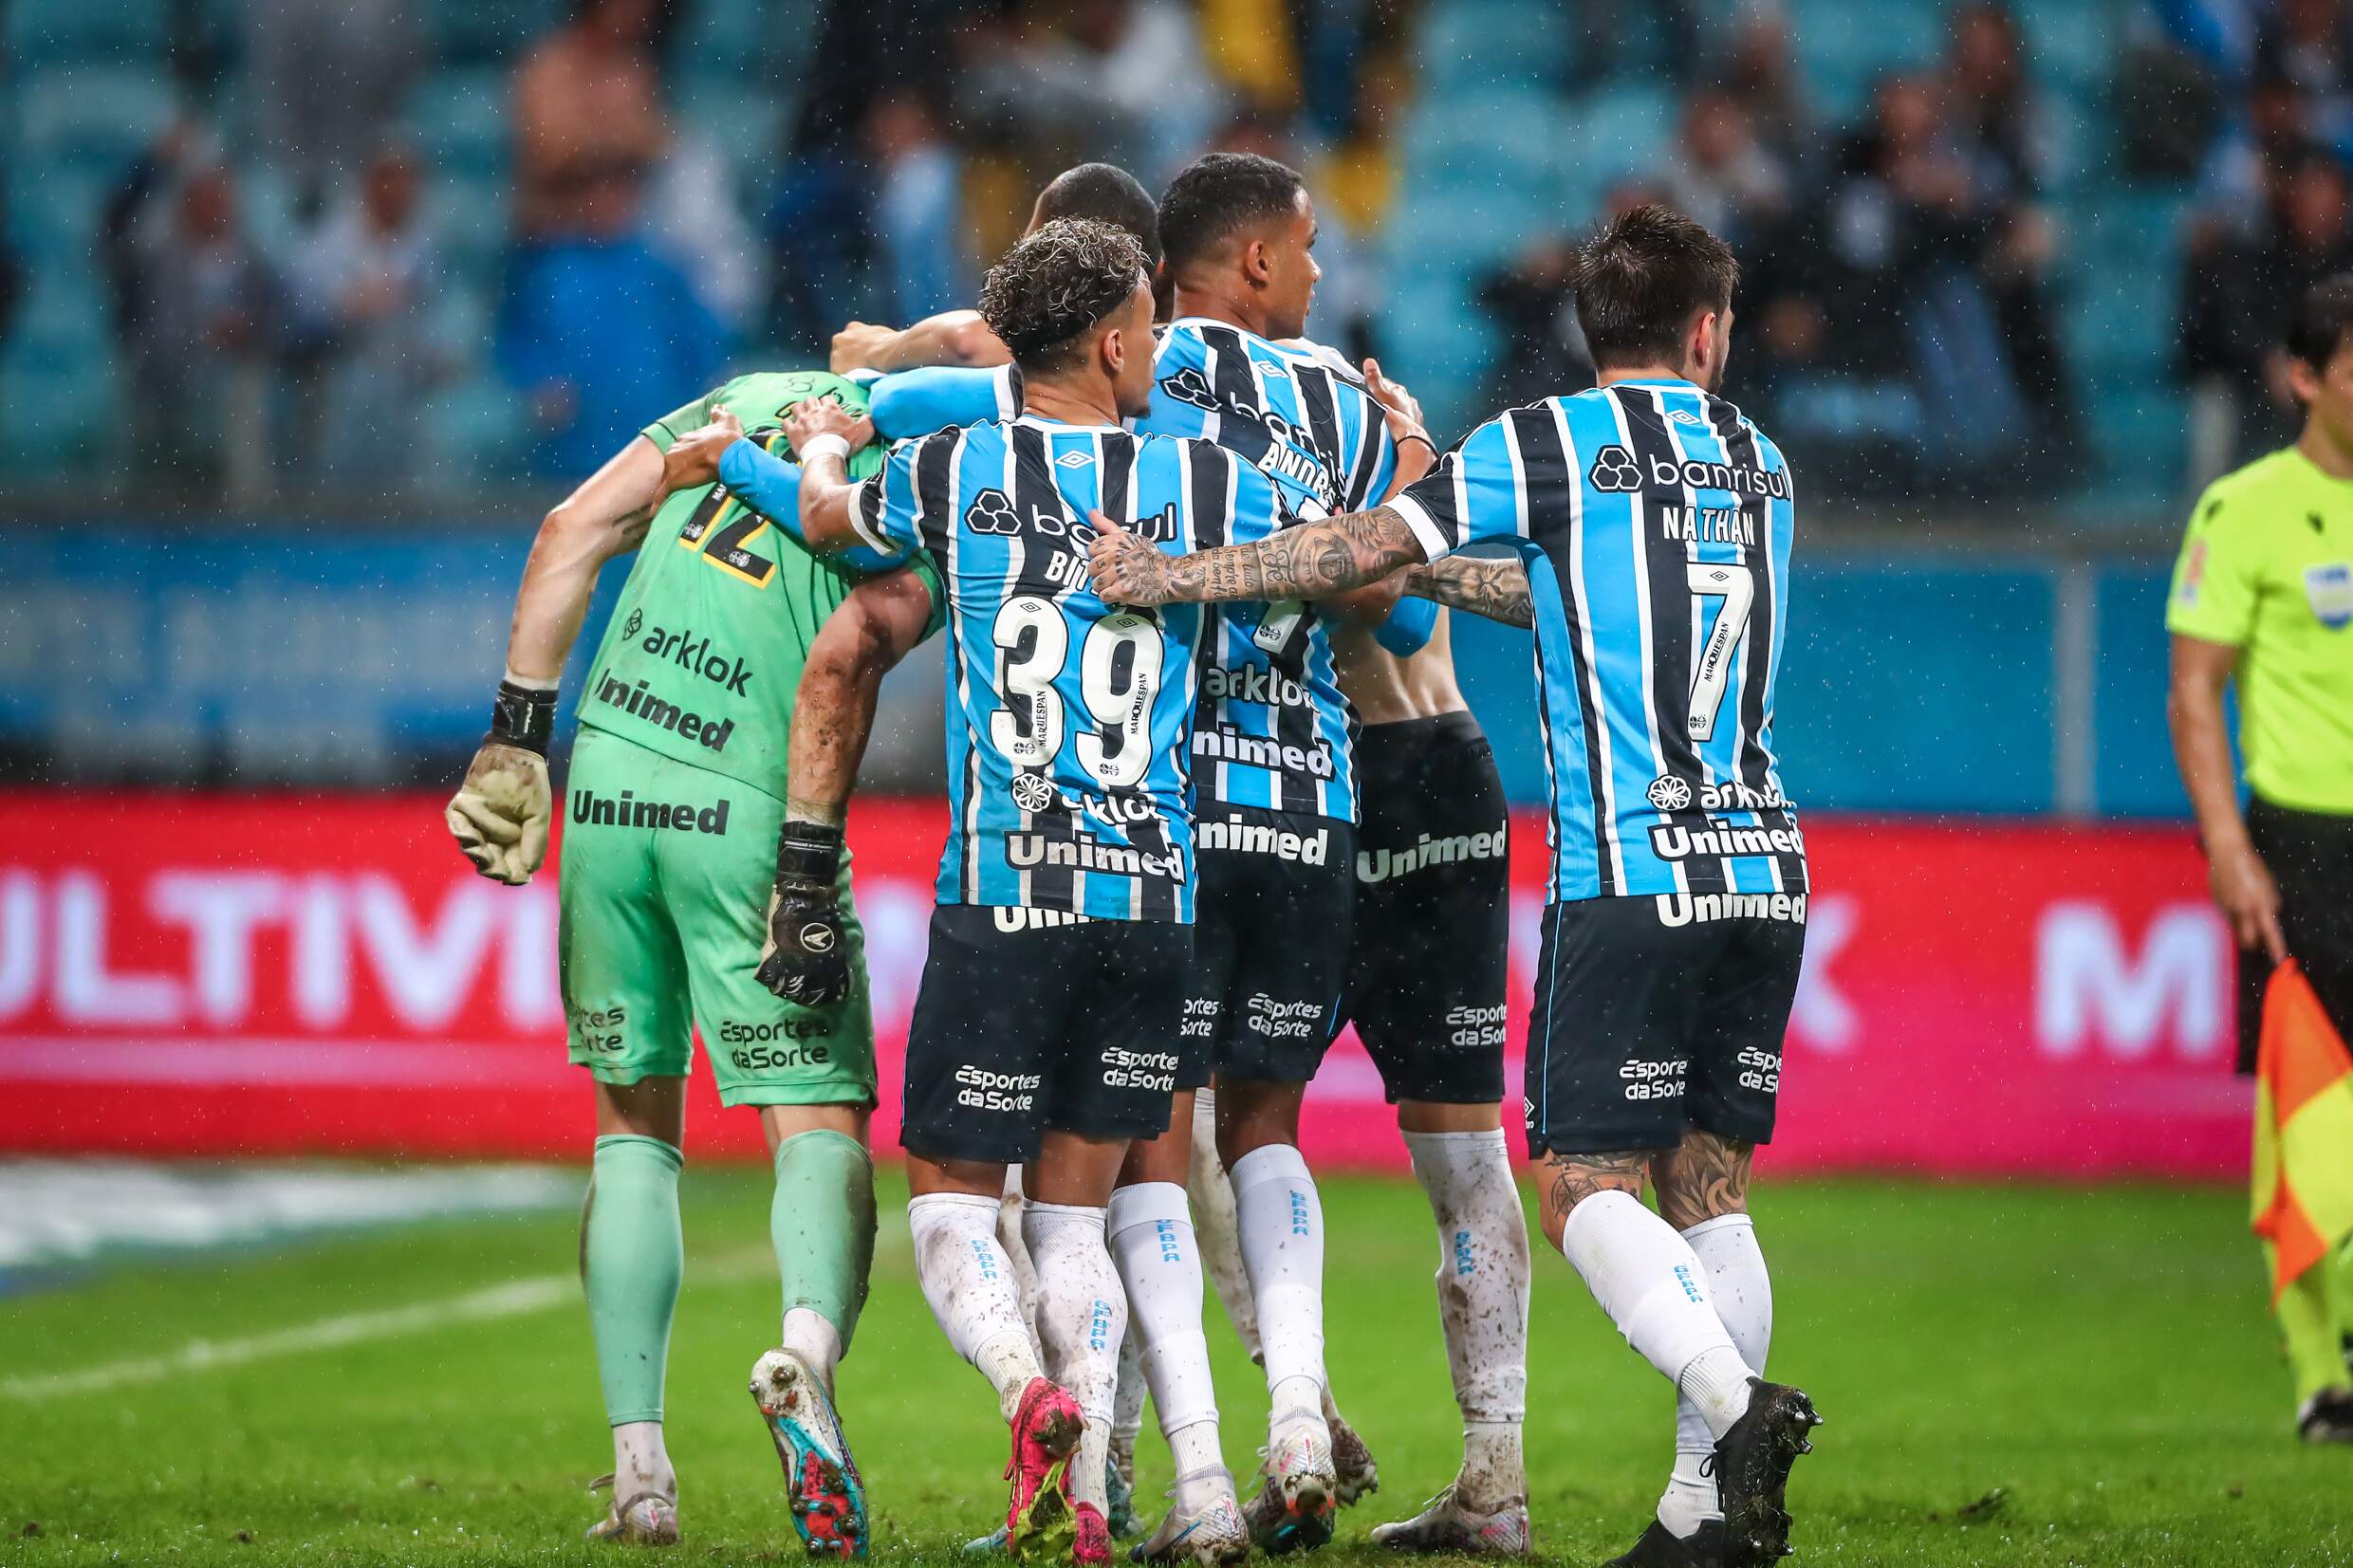 Na Arena, Grêmio recebe o Atlético Mineiro pelo Brasileirão - TV Pampa